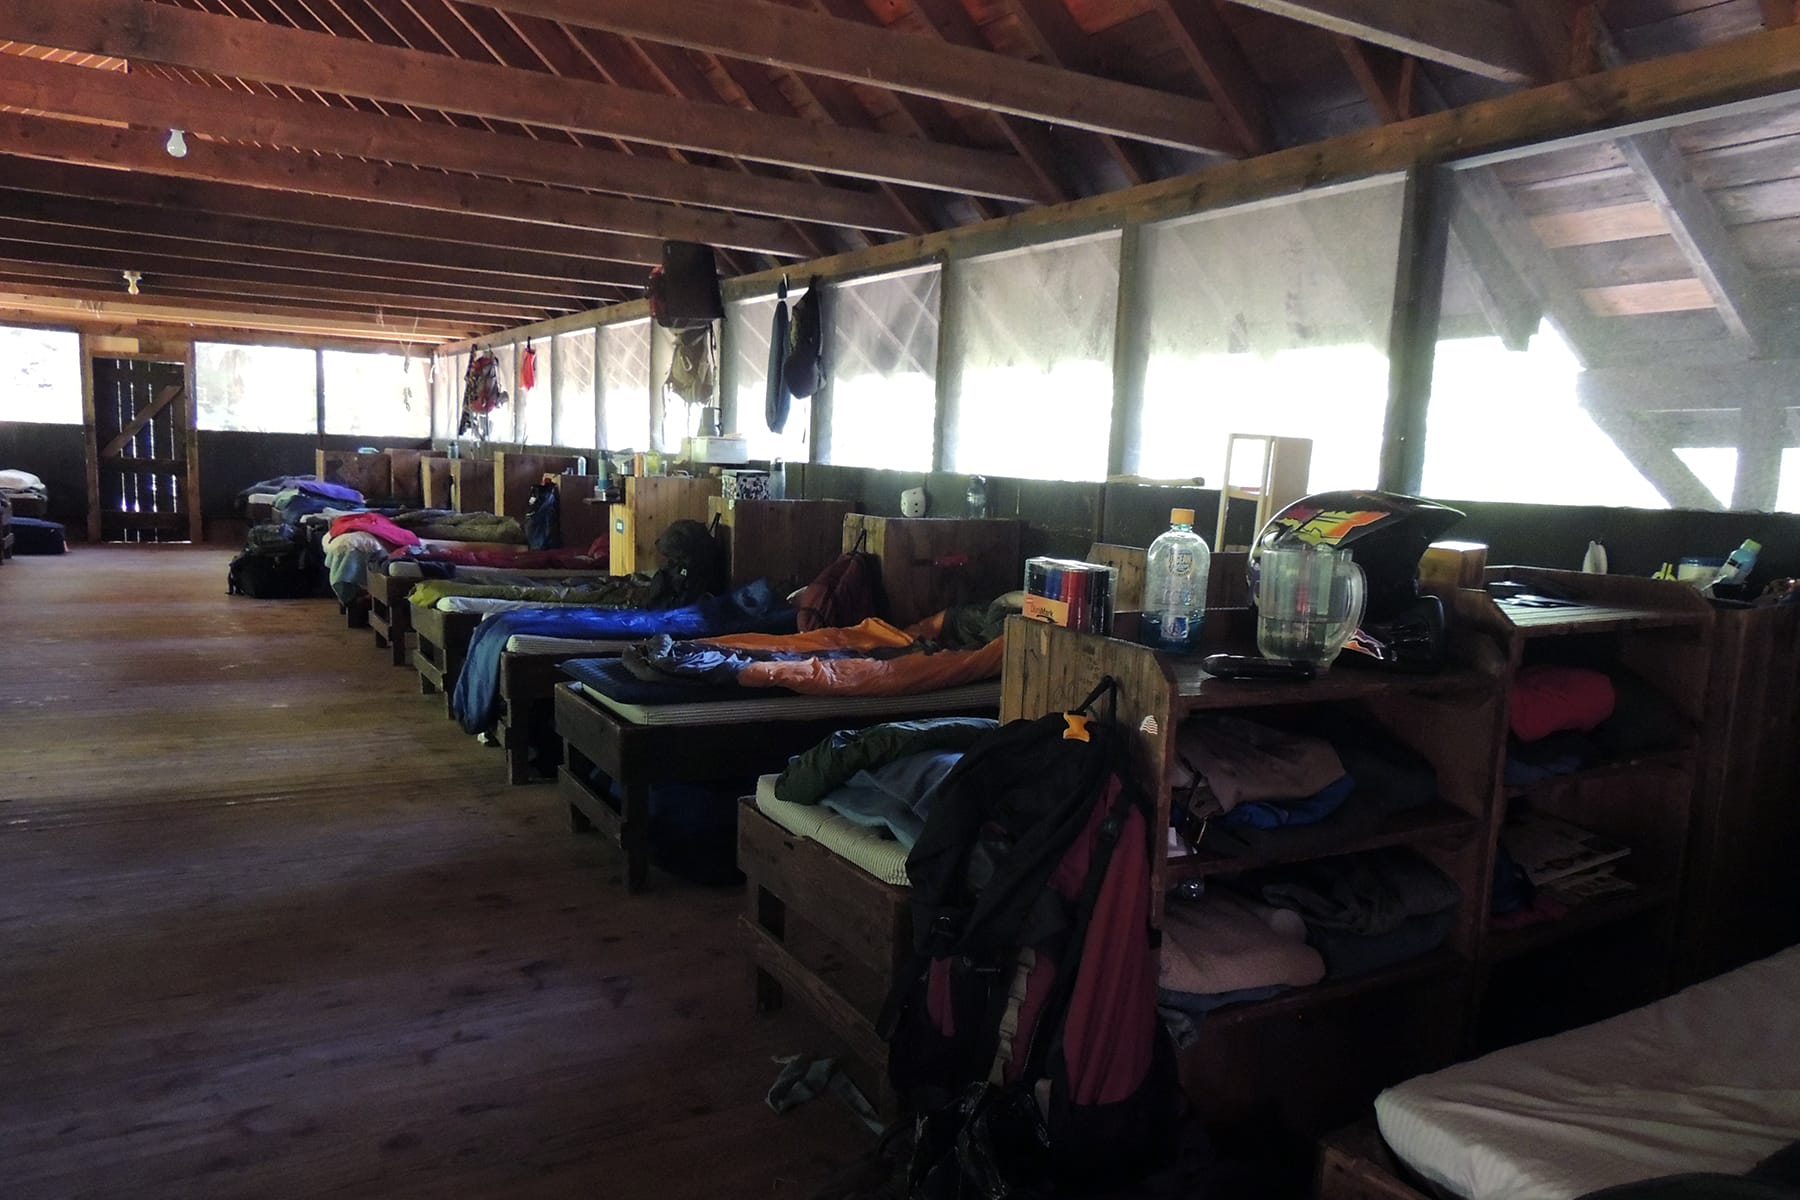 Inside a Camp Mowglis cabin